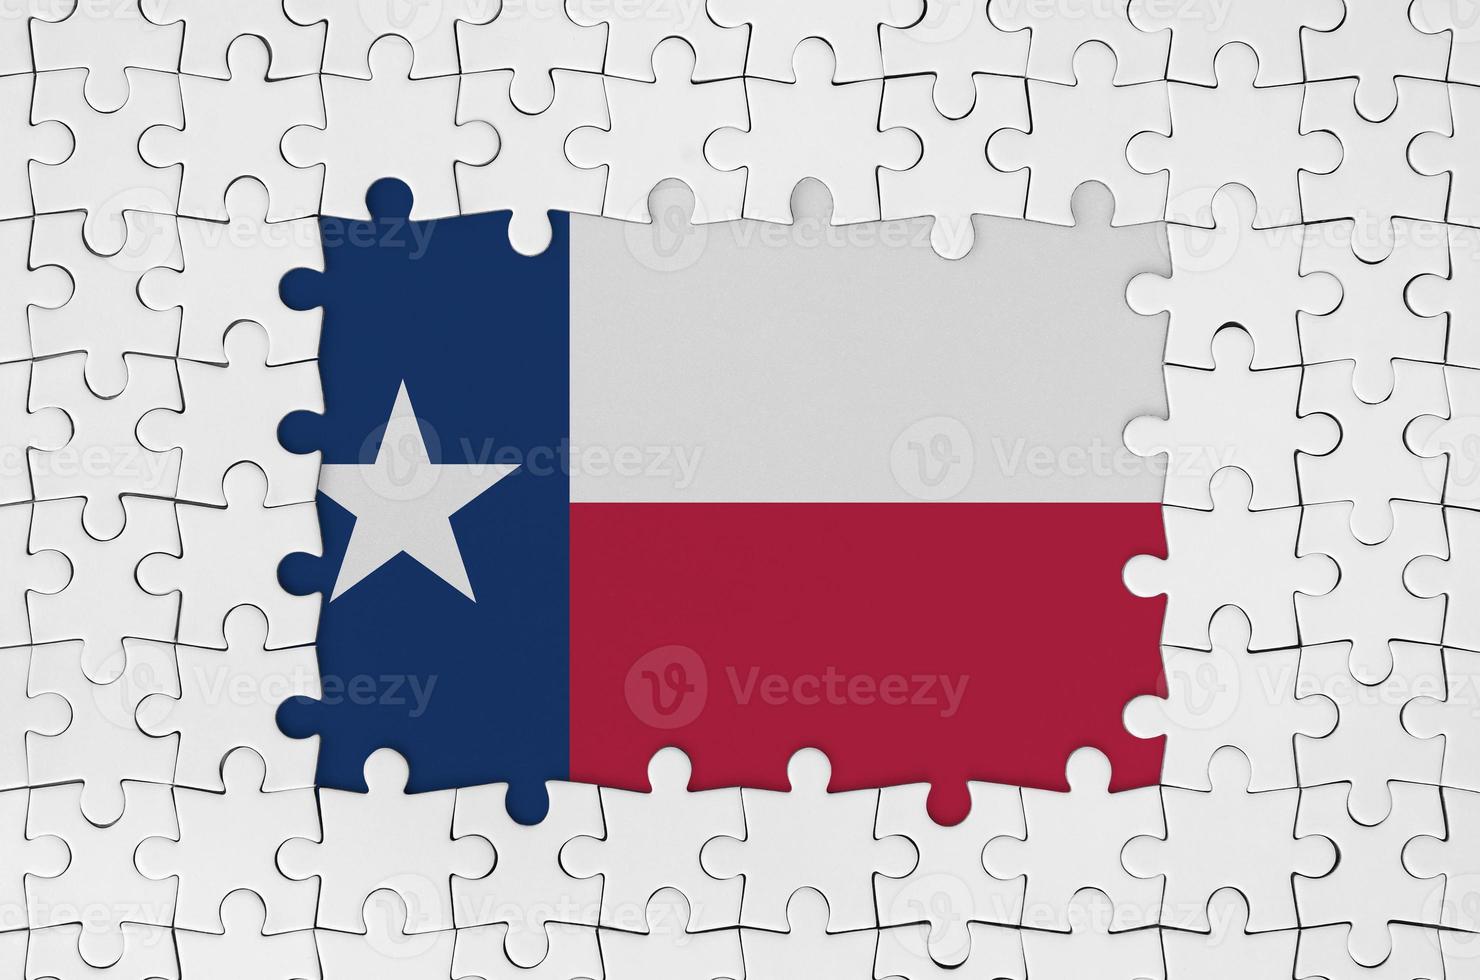 bandeira do estado do texas eua no quadro de peças de quebra-cabeça brancas com parte central ausente foto